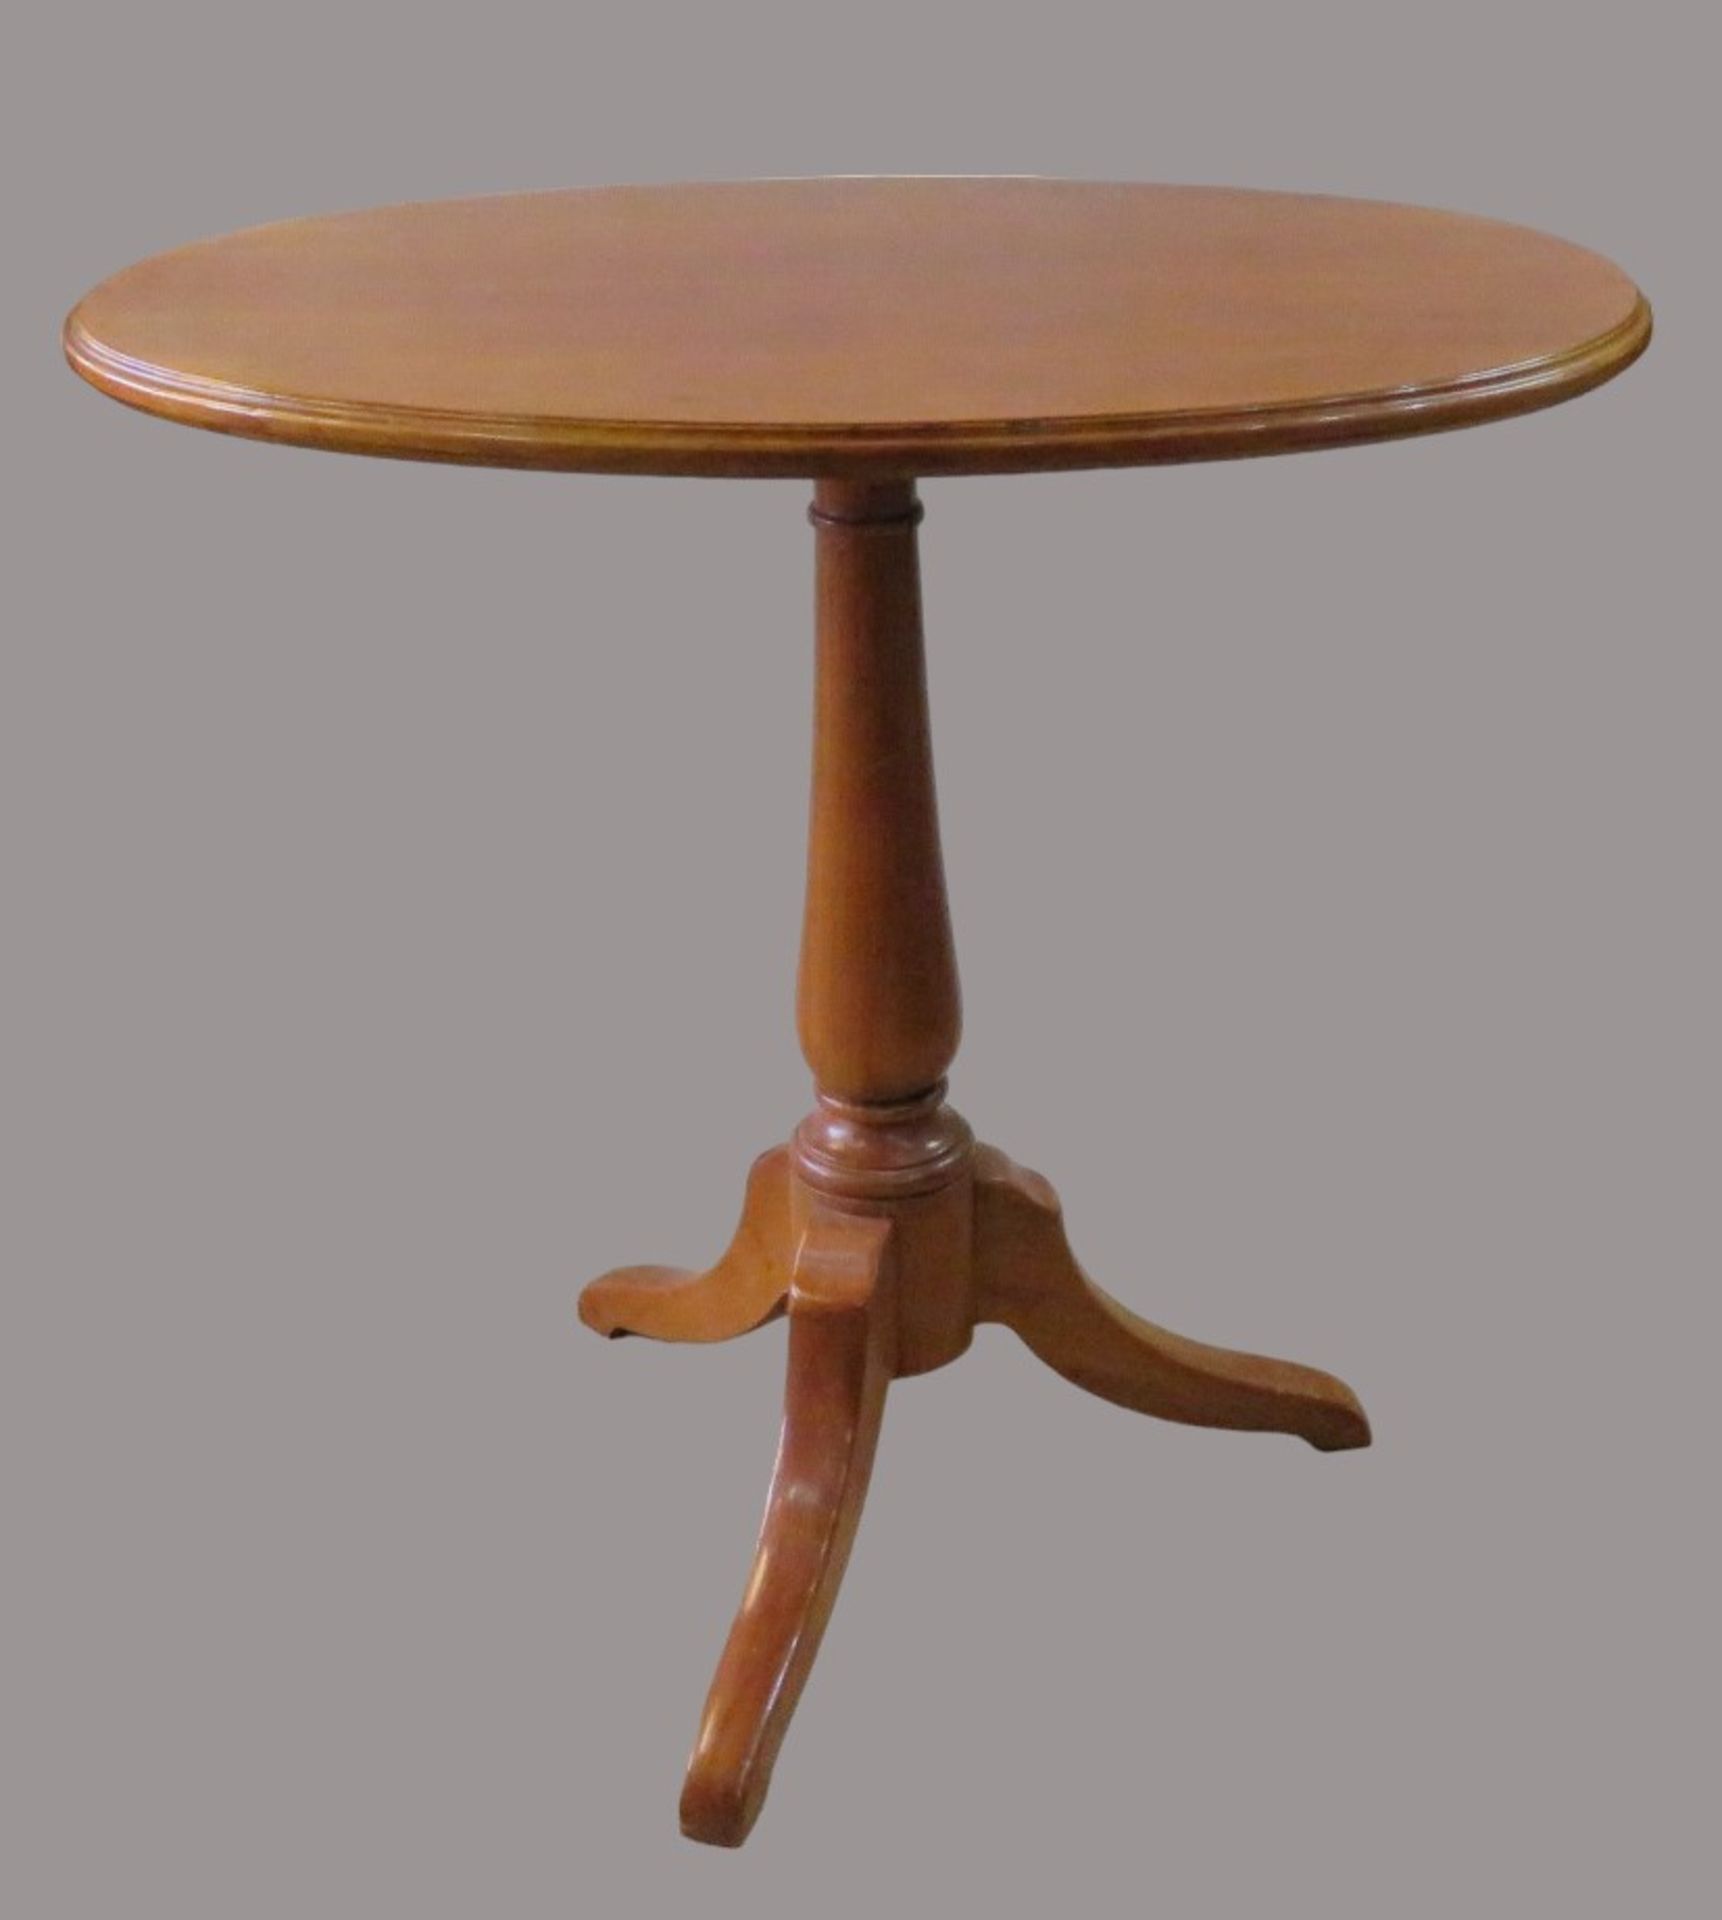 Beistelltisch, Louis Philippe-Stil, ovale Platte, nussbaumfarben, Dreifuß, Gebrauchsspuren, 70 x 76